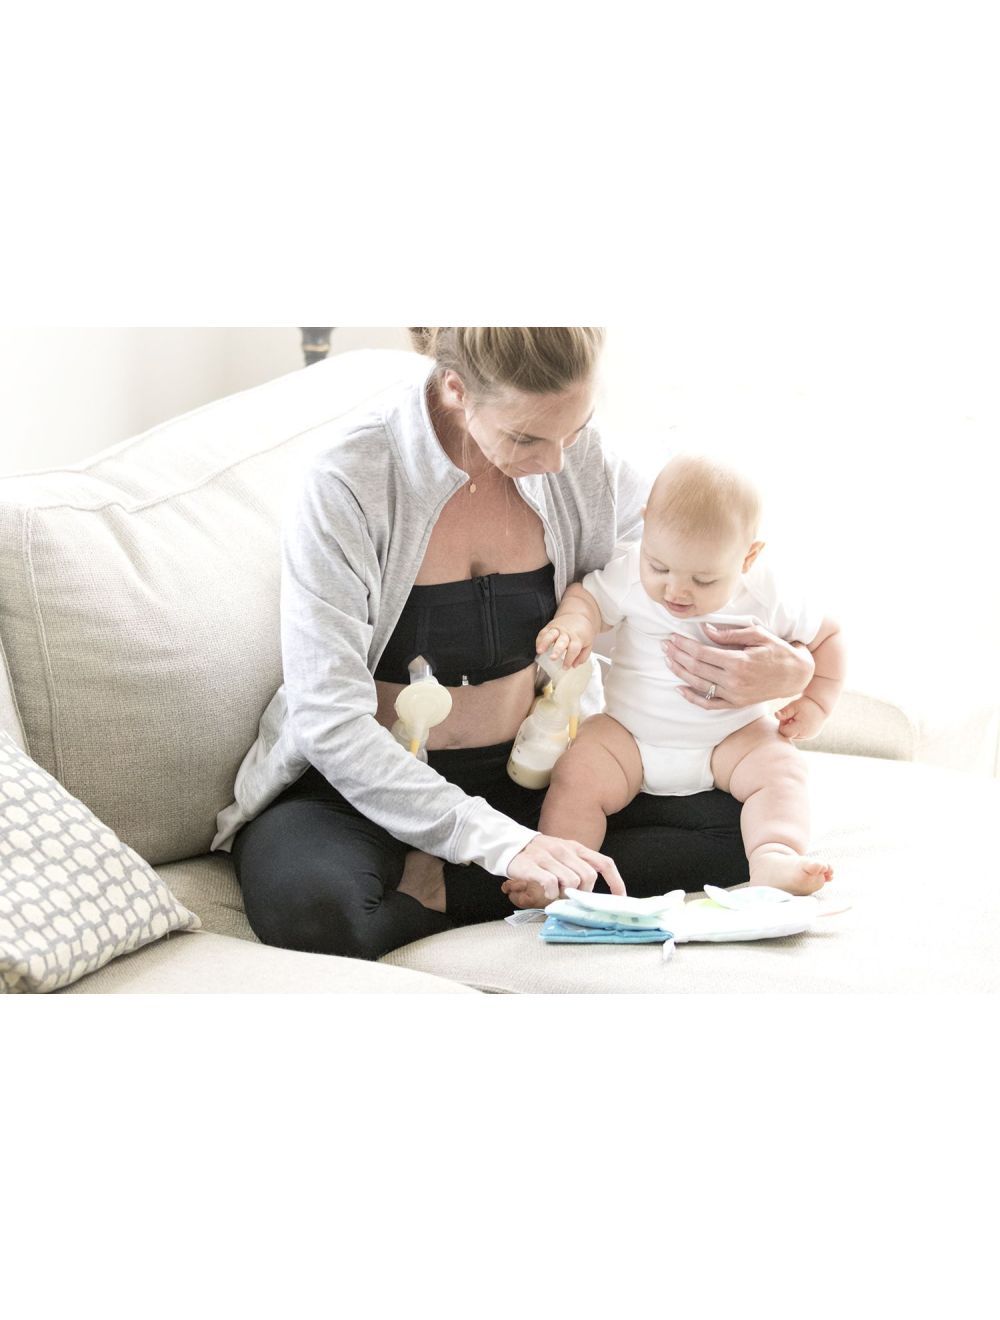 NEW Medela Maternity & Nursing Body Pillow Breastfeeding Pregnancy